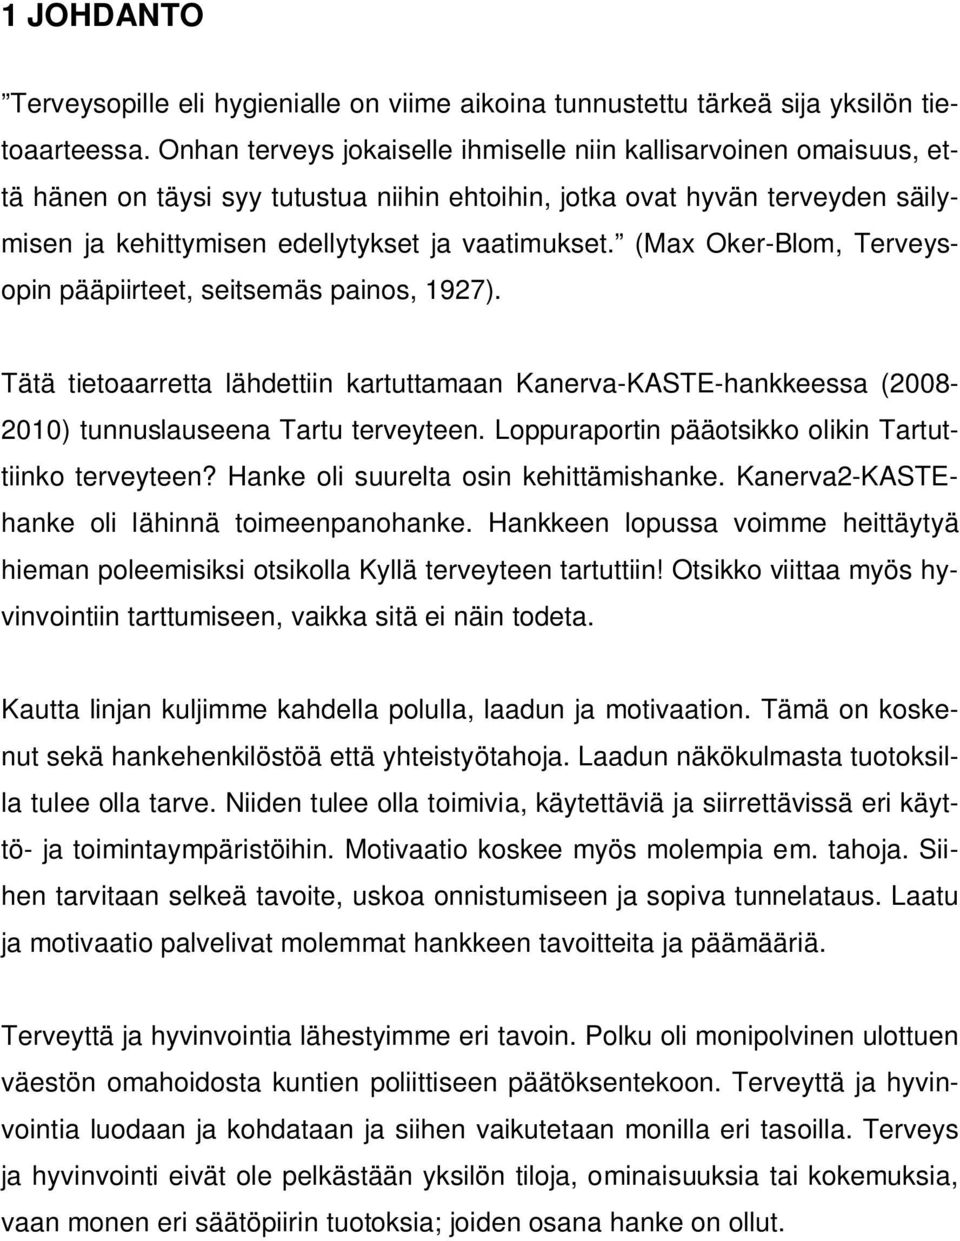 (Max Oker-Blom, Terveysopin pääpiirteet, seitsemäs painos, 1927). Tätä tietoaarretta lähdettiin kartuttamaan Kanerva-KASTE-hankkeessa (2008-2010) tunnuslauseena Tartu terveyteen.